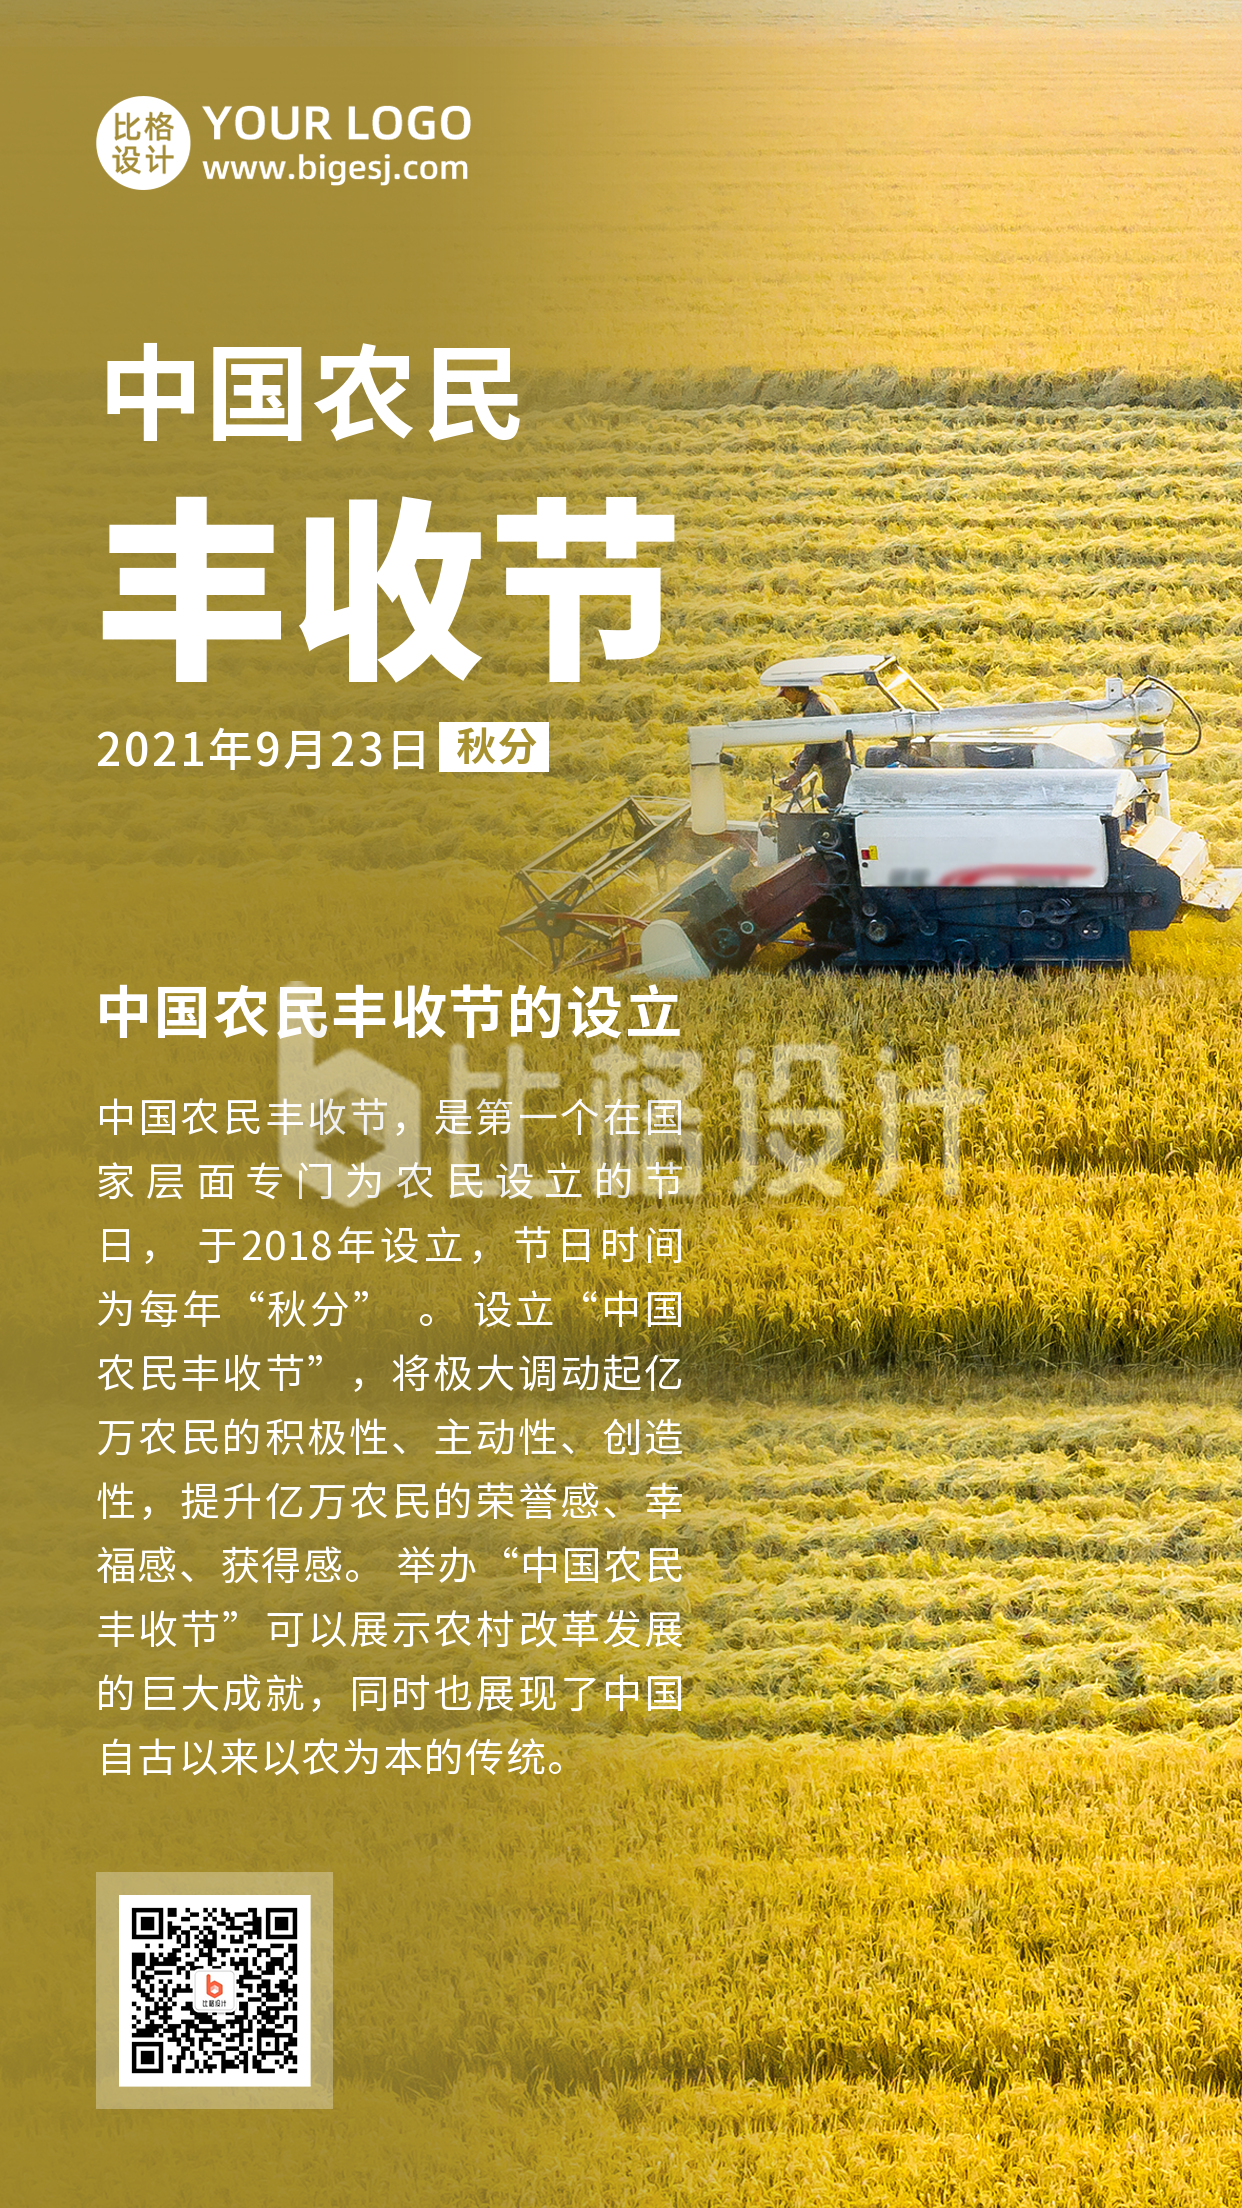 中国农民丰收节秋收农耕实景手机海报